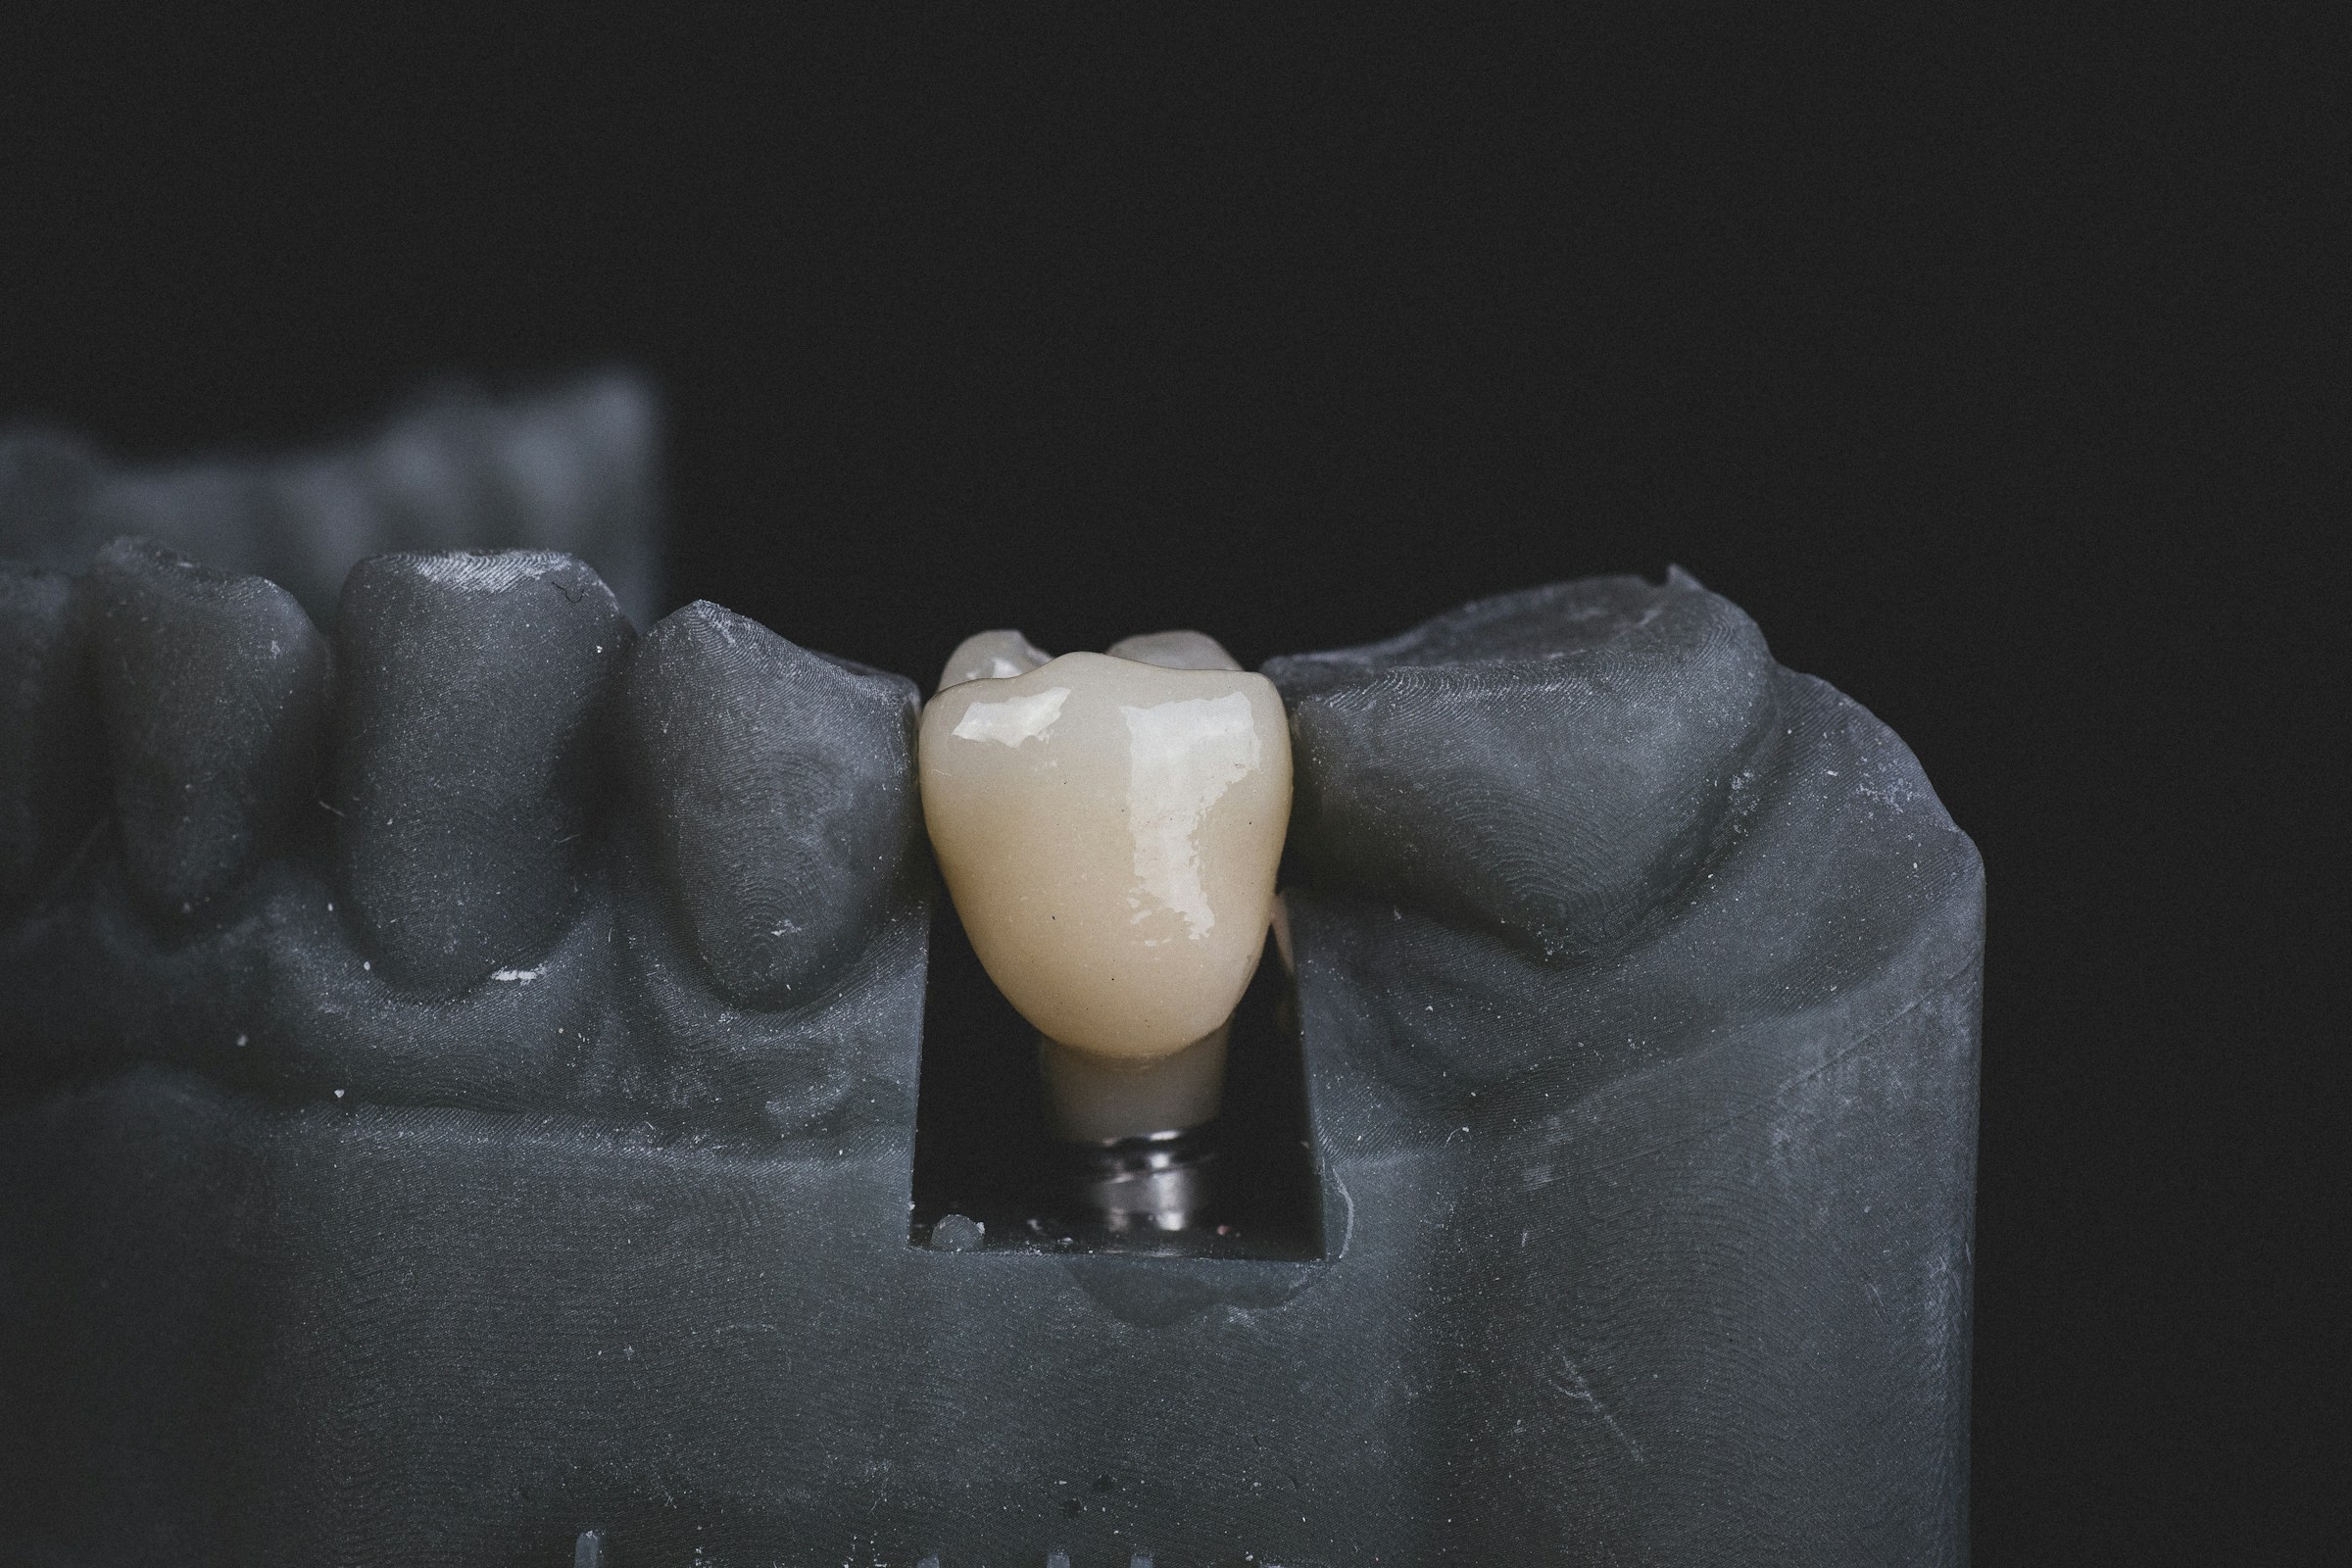 implantologia impianto dentale carico immediato